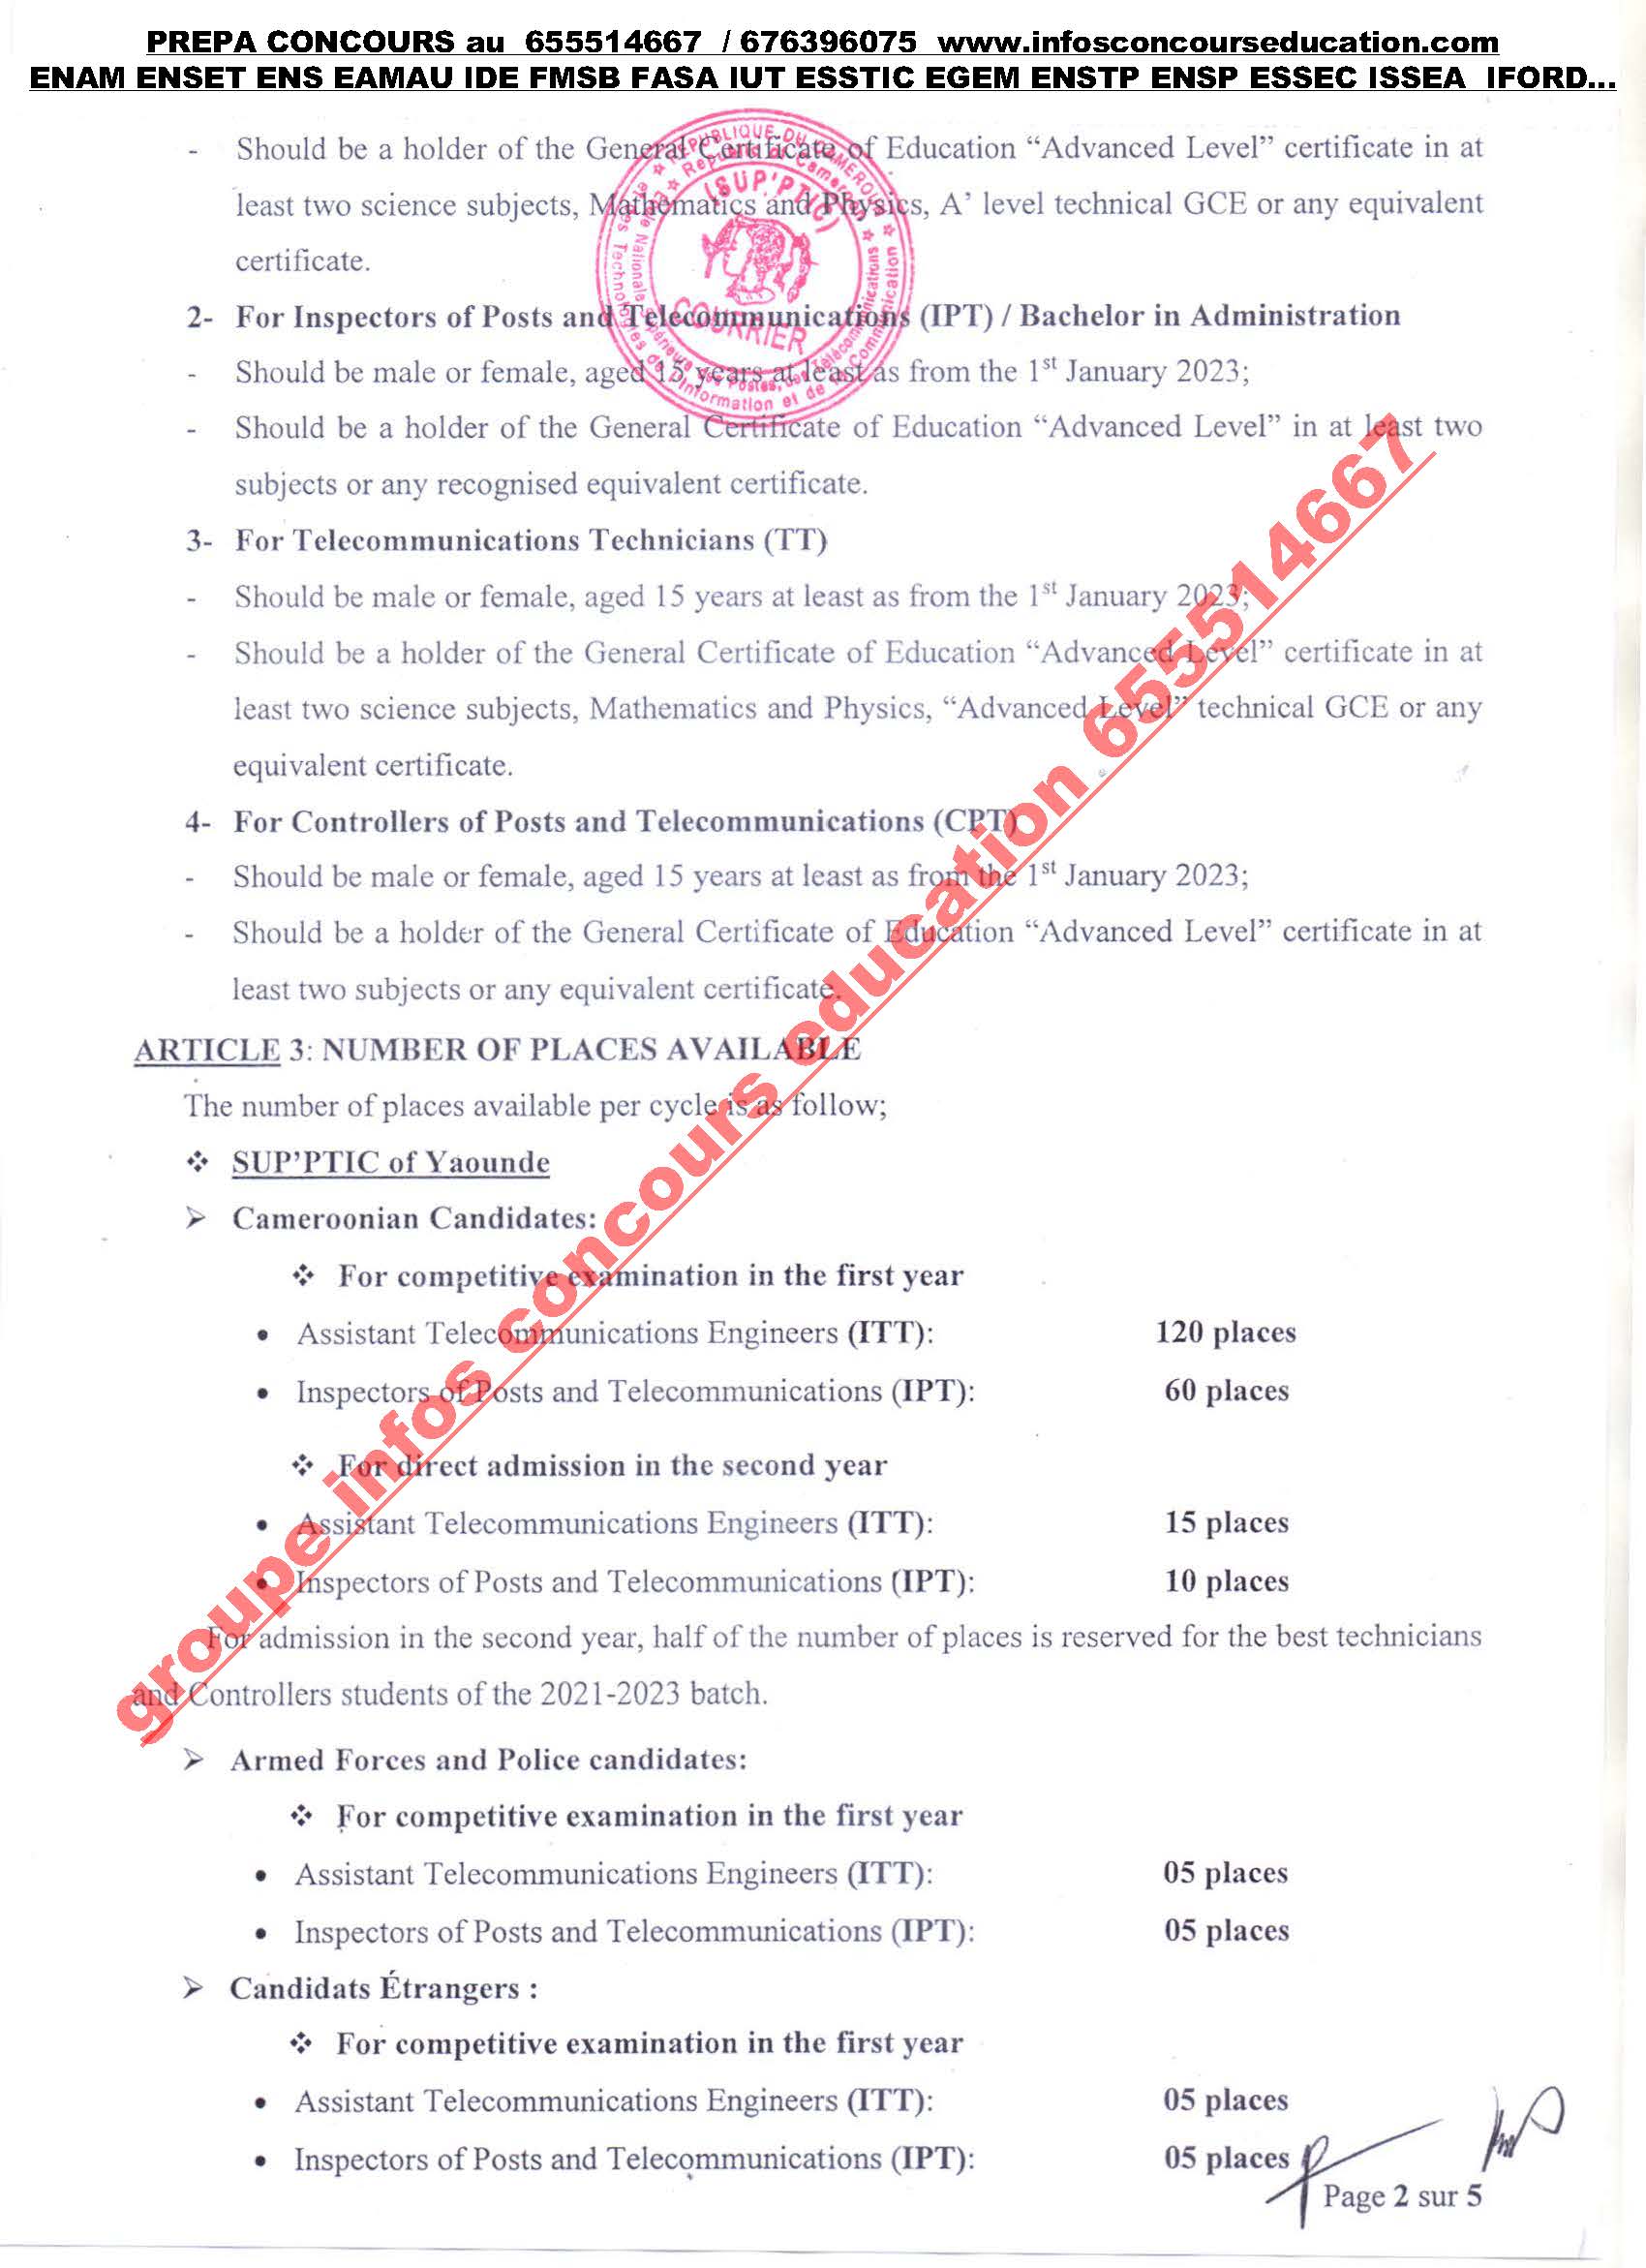  Concours à l’Ecole Nationale Supérieure des Postes, des Télécommunications et des Technologies de l’Information et Communication (SUP’PTIC) de Yaoundé 2023